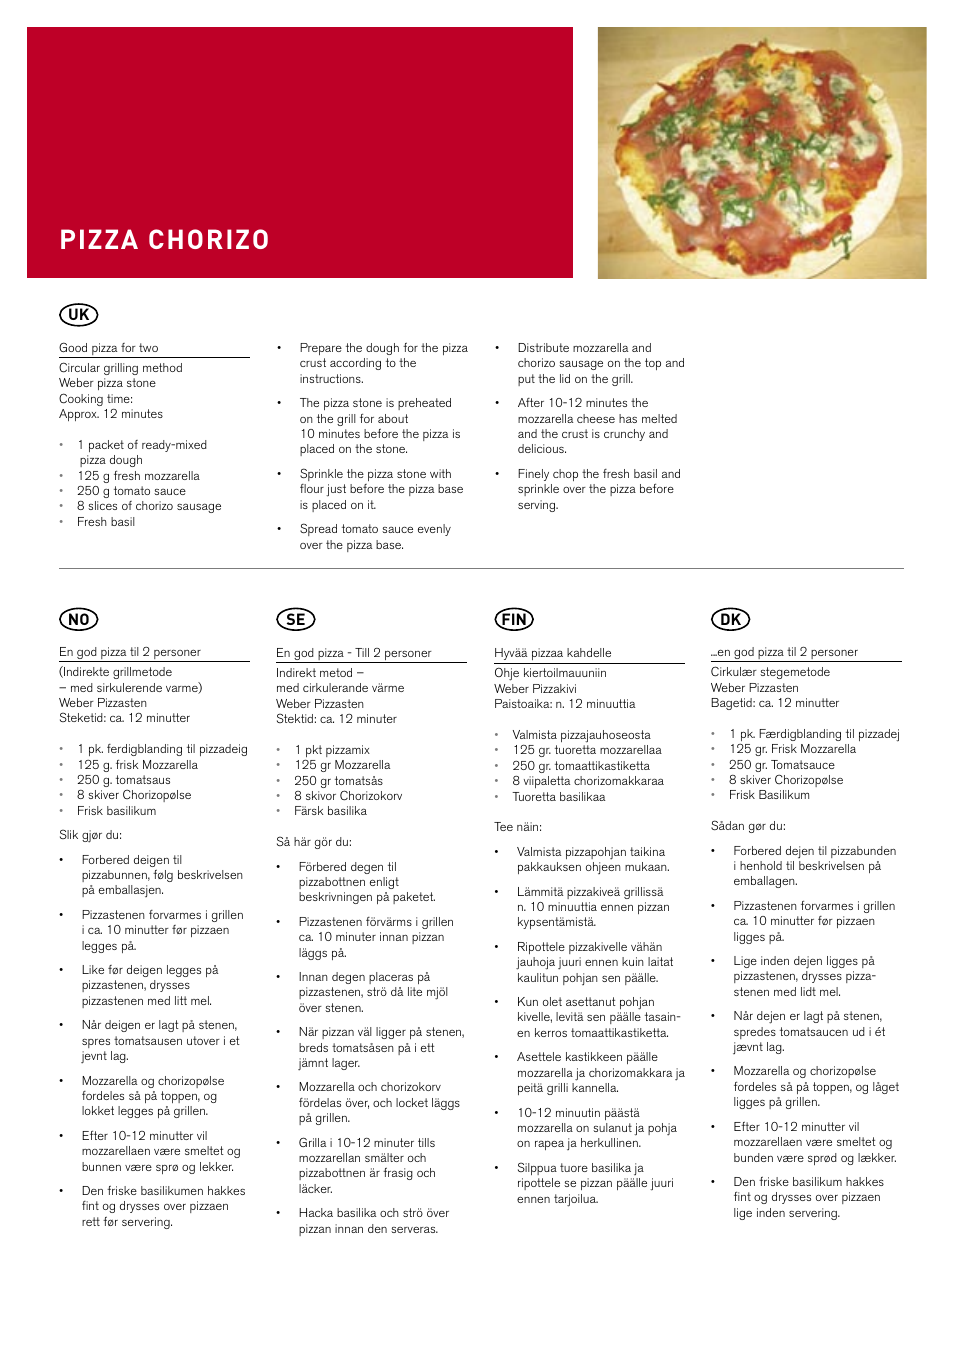 Pizza chorizo, Se fin | weber Pizzastein rund & eckig User Manual | Page 7  / 8